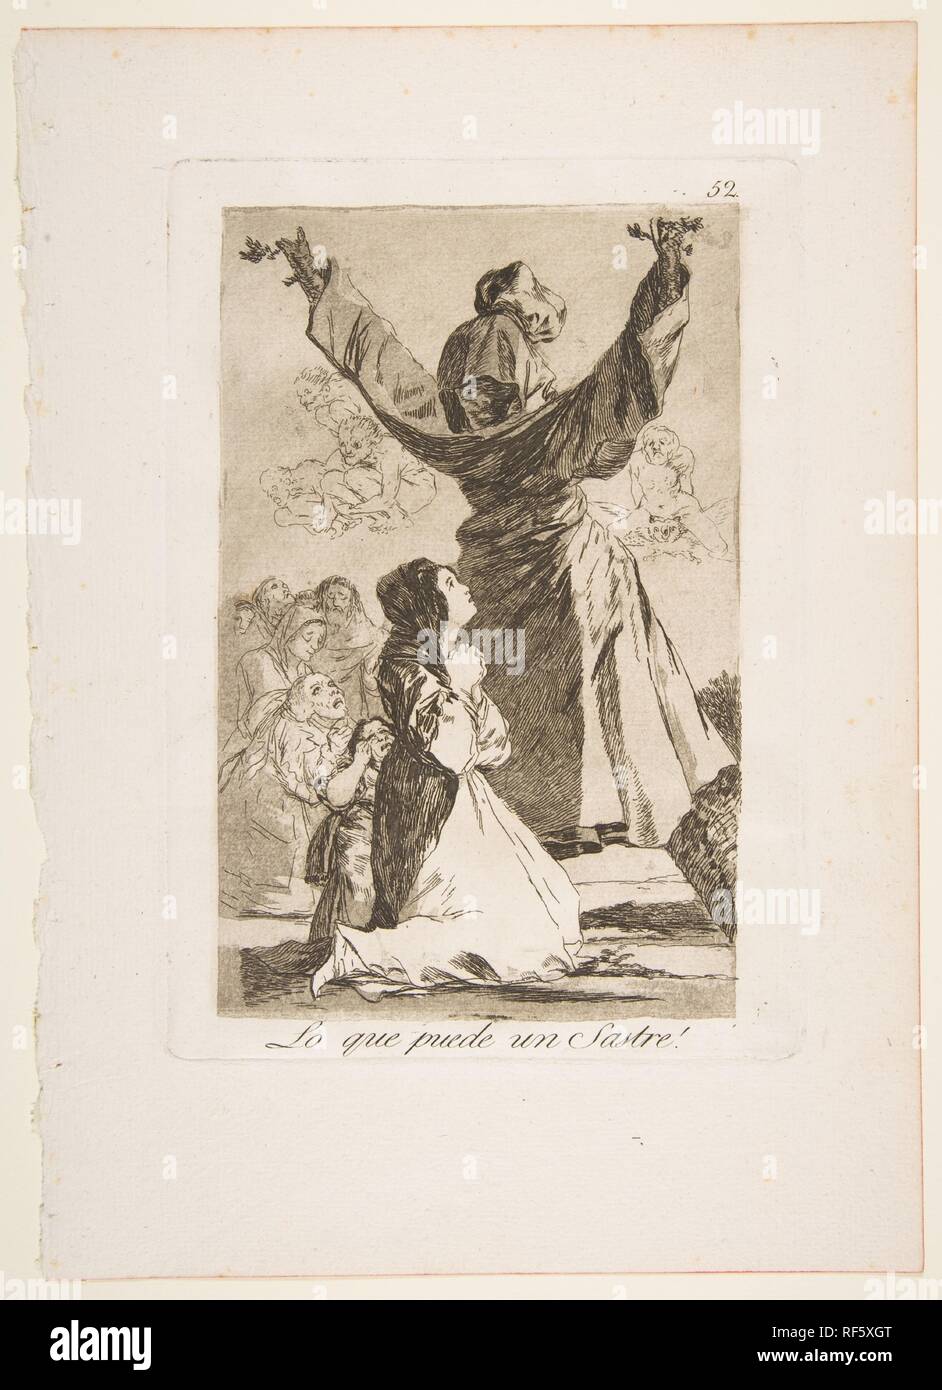 52 Plaque de "Los Caprichos" : qu'un tailleur peut faire ! (Lo que puede un Sastre !). Artiste : Goya (Francisco de Goya y Lucientes (Fuendetodos) espagnol, 1746-1828 Bordeaux). Dimensions : Plateau : 8 3/8 x 5 15/16 in. (21,3 x 15,1 cm) feuille : 11 5/8 x 8 1/4 in. (29,5 × 20,9 cm). Series/portefeuille : Los Caprichos. Date : 1799. Musée : Metropolitan Museum of Art, New York, USA. Banque D'Images